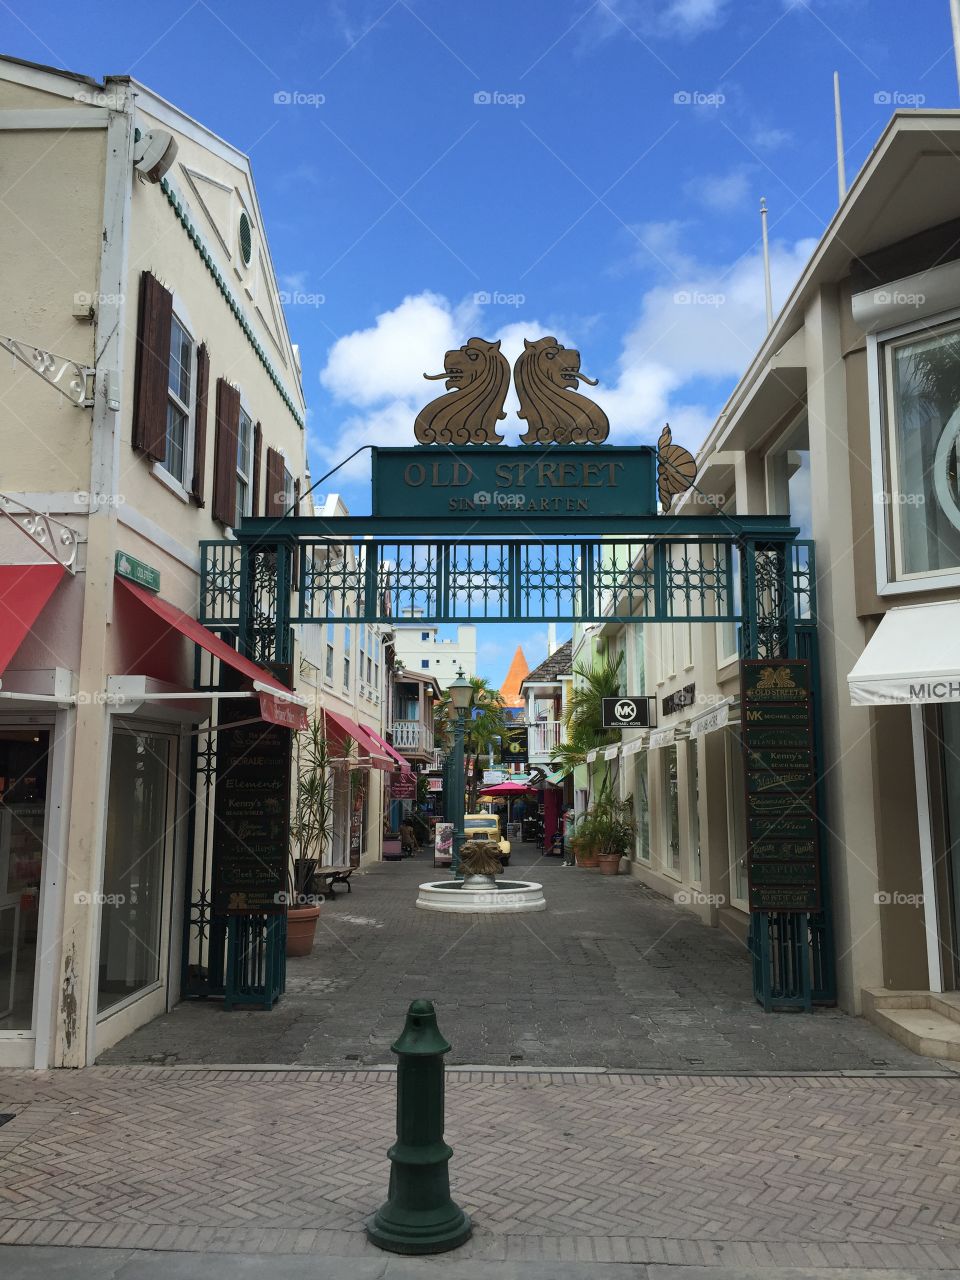 St. Maarten Alley